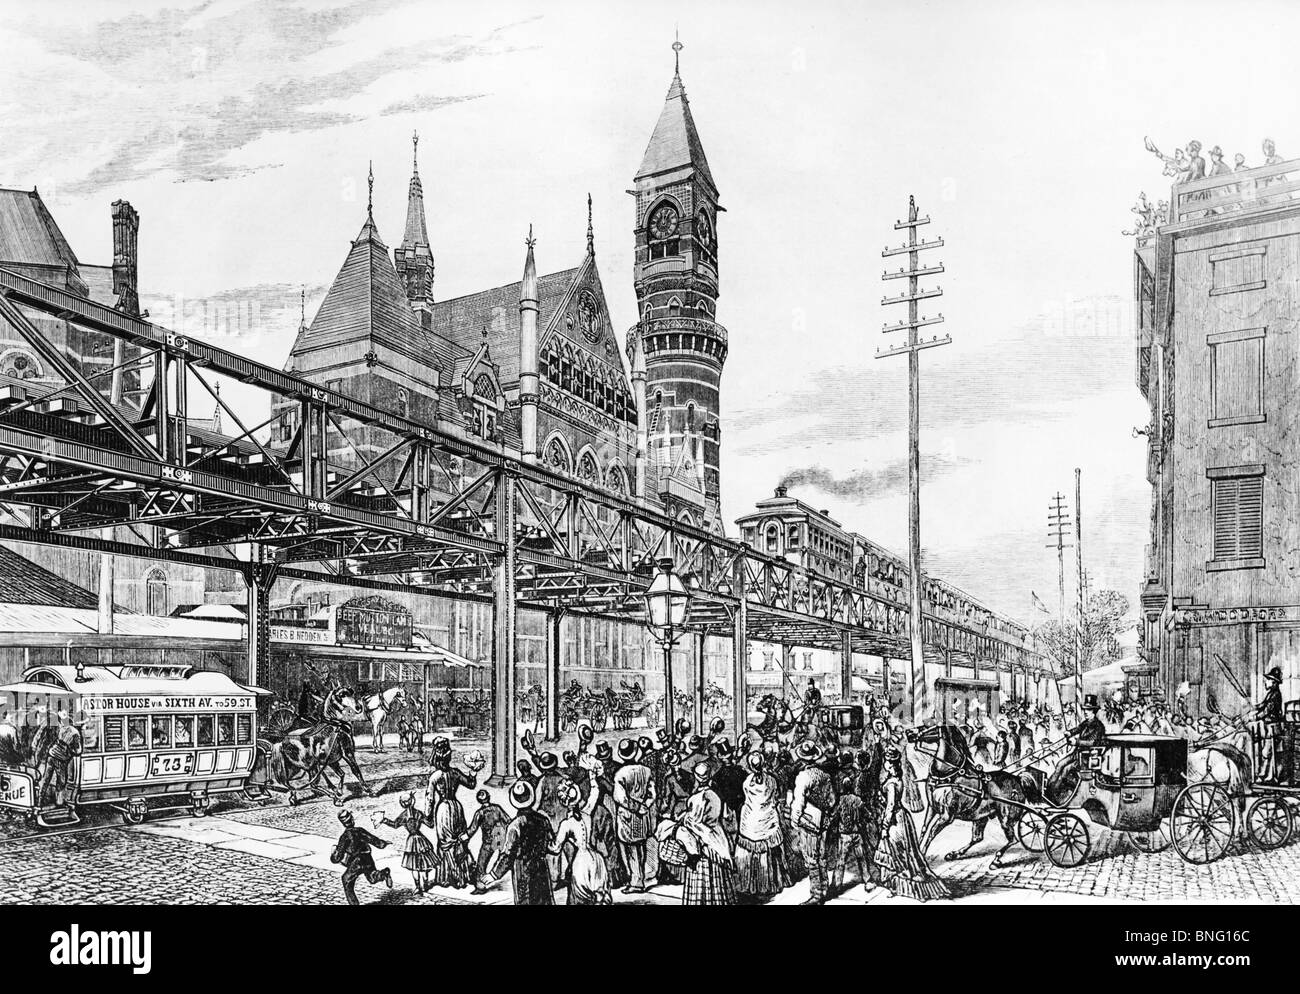 Erster Lauf der sechste Avenue-Hochbahn im Jahr 1878 von unbekannten Künstler drucken Stockfoto